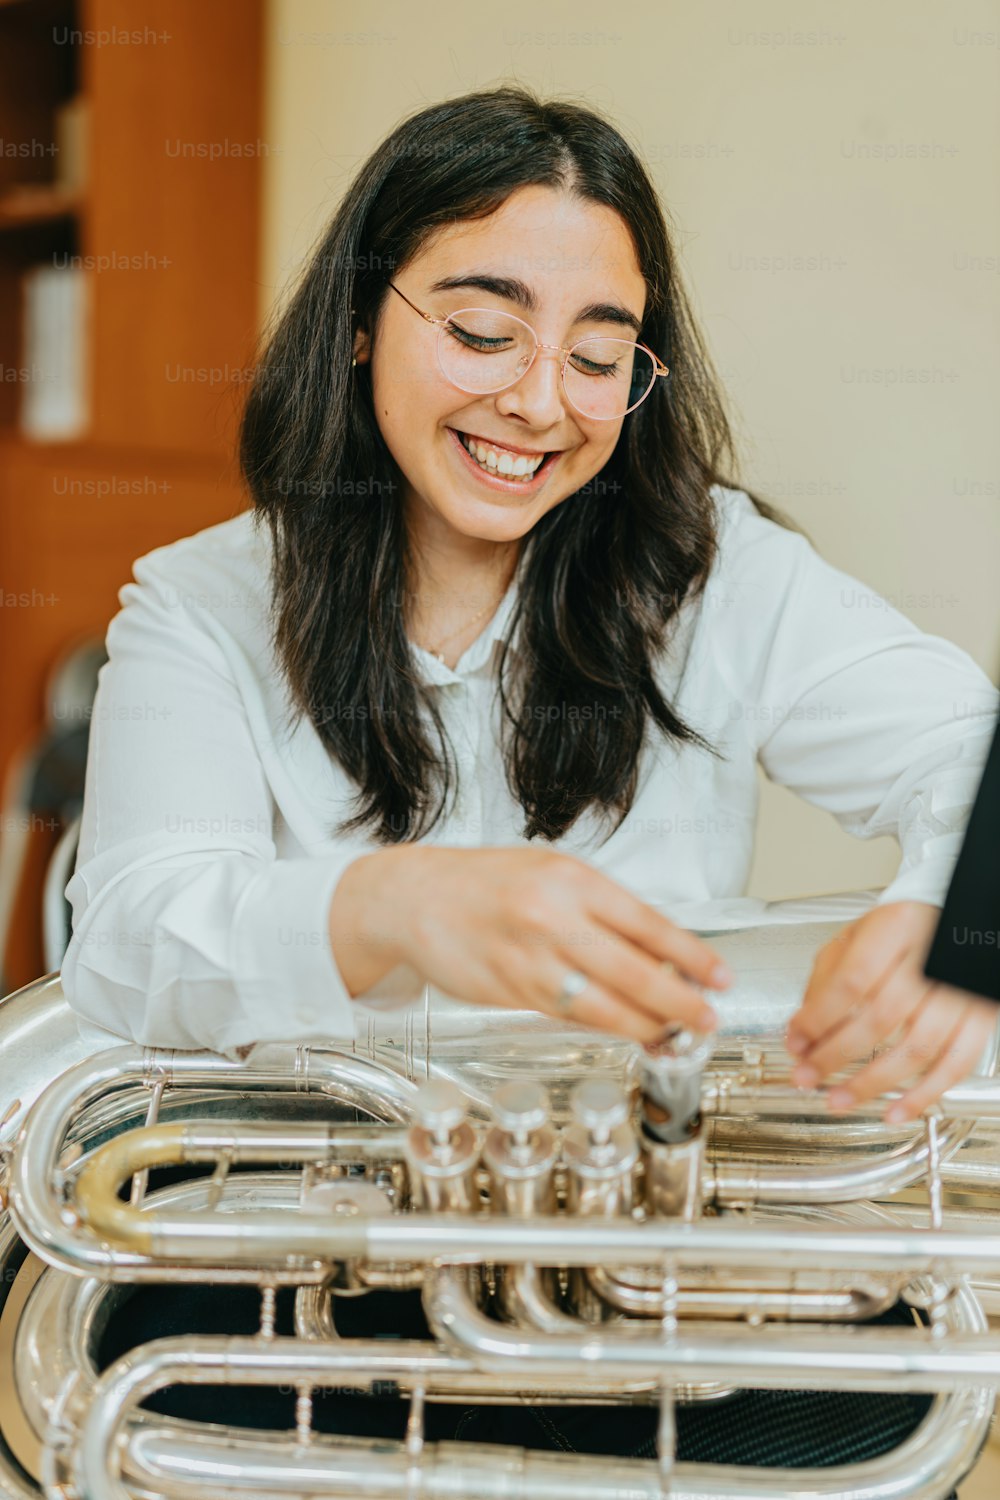 Une femme sourit en jouant d’un instrument de musique